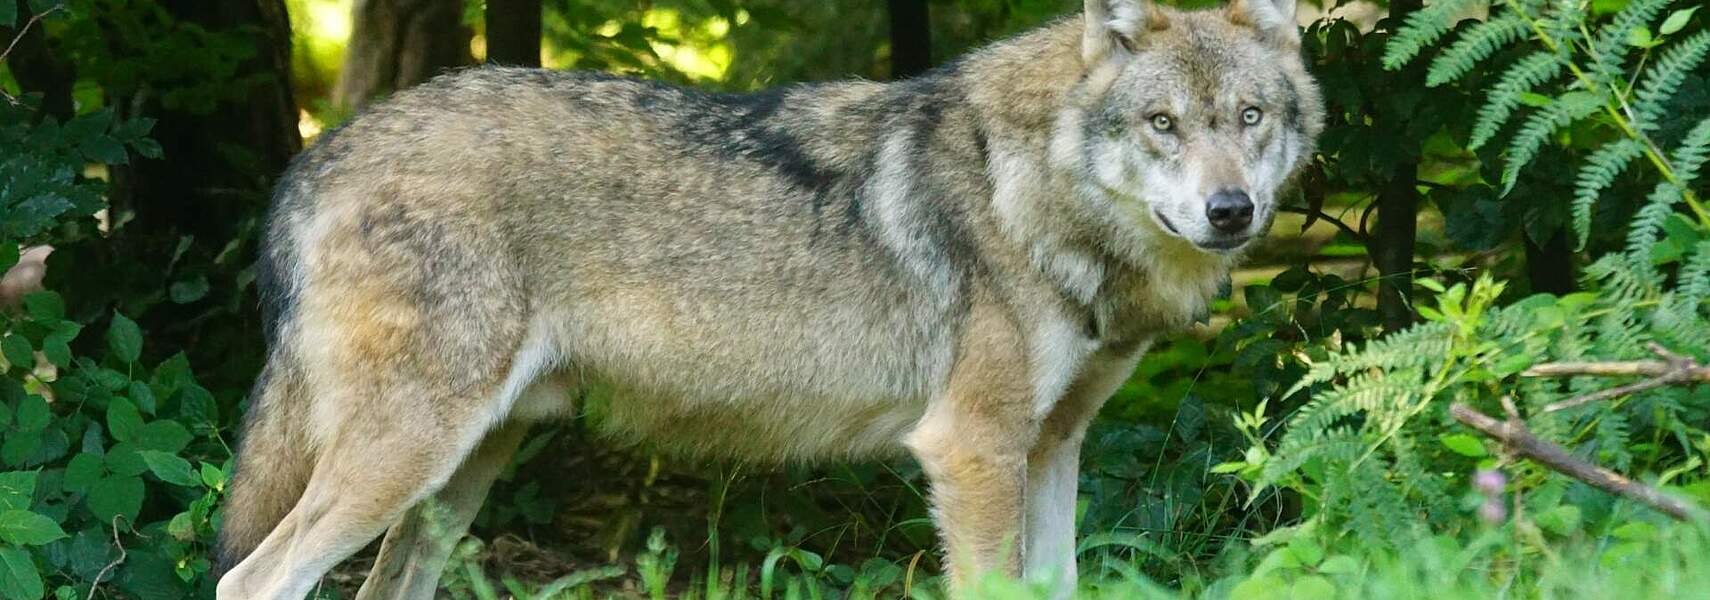 Erhaltungszustand des Wolfes gesichert, Weidetierhaltung gefährdet